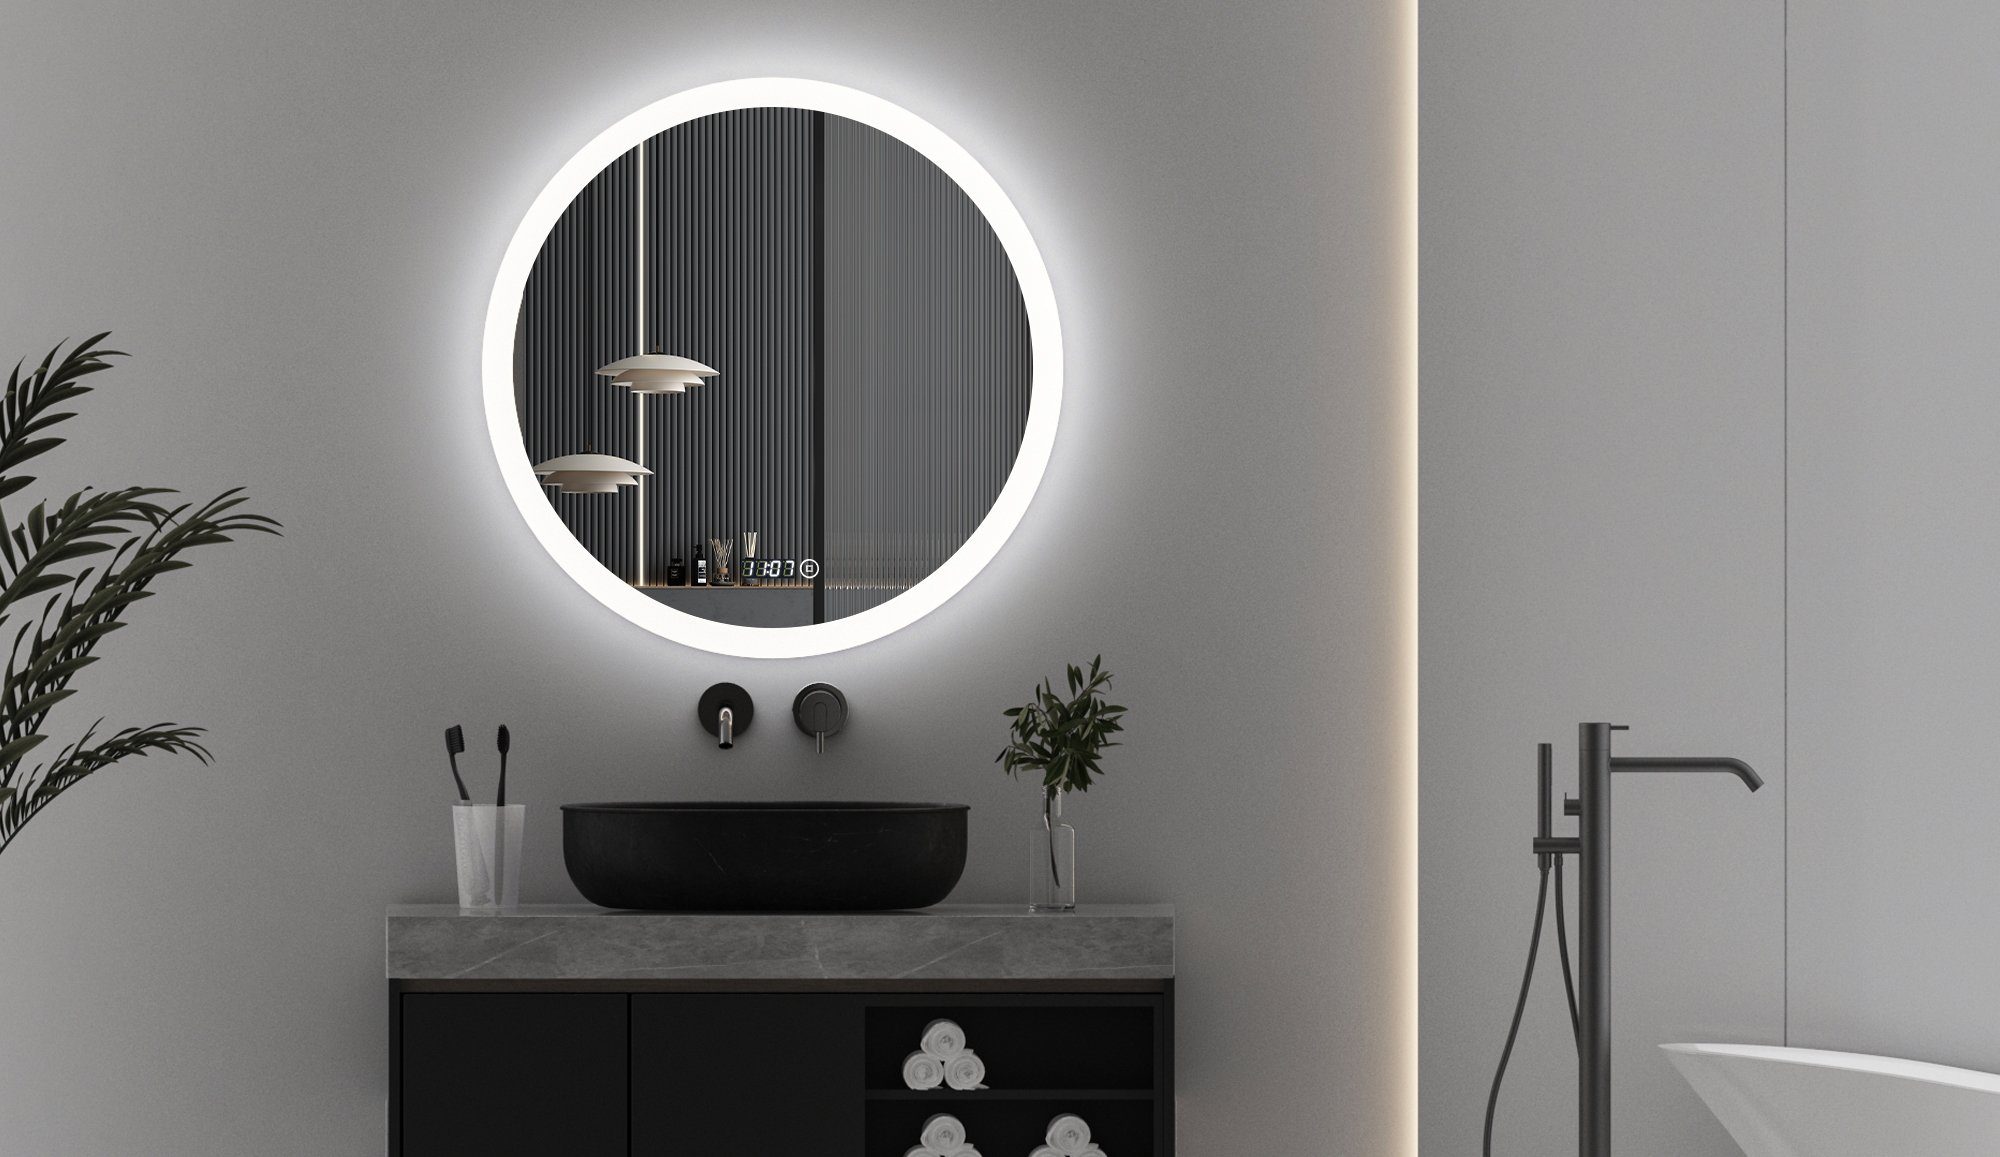 WDWRITTI Spiegel Rund 60 cm Led Badspiegel mit Touch Uhr dimmbar  Lichtfarben Helligkeit (Wandspiegel mit beleuchtung, Warmweiß, Neutral,  Kaltweiß), Speicherfunktion, IP44